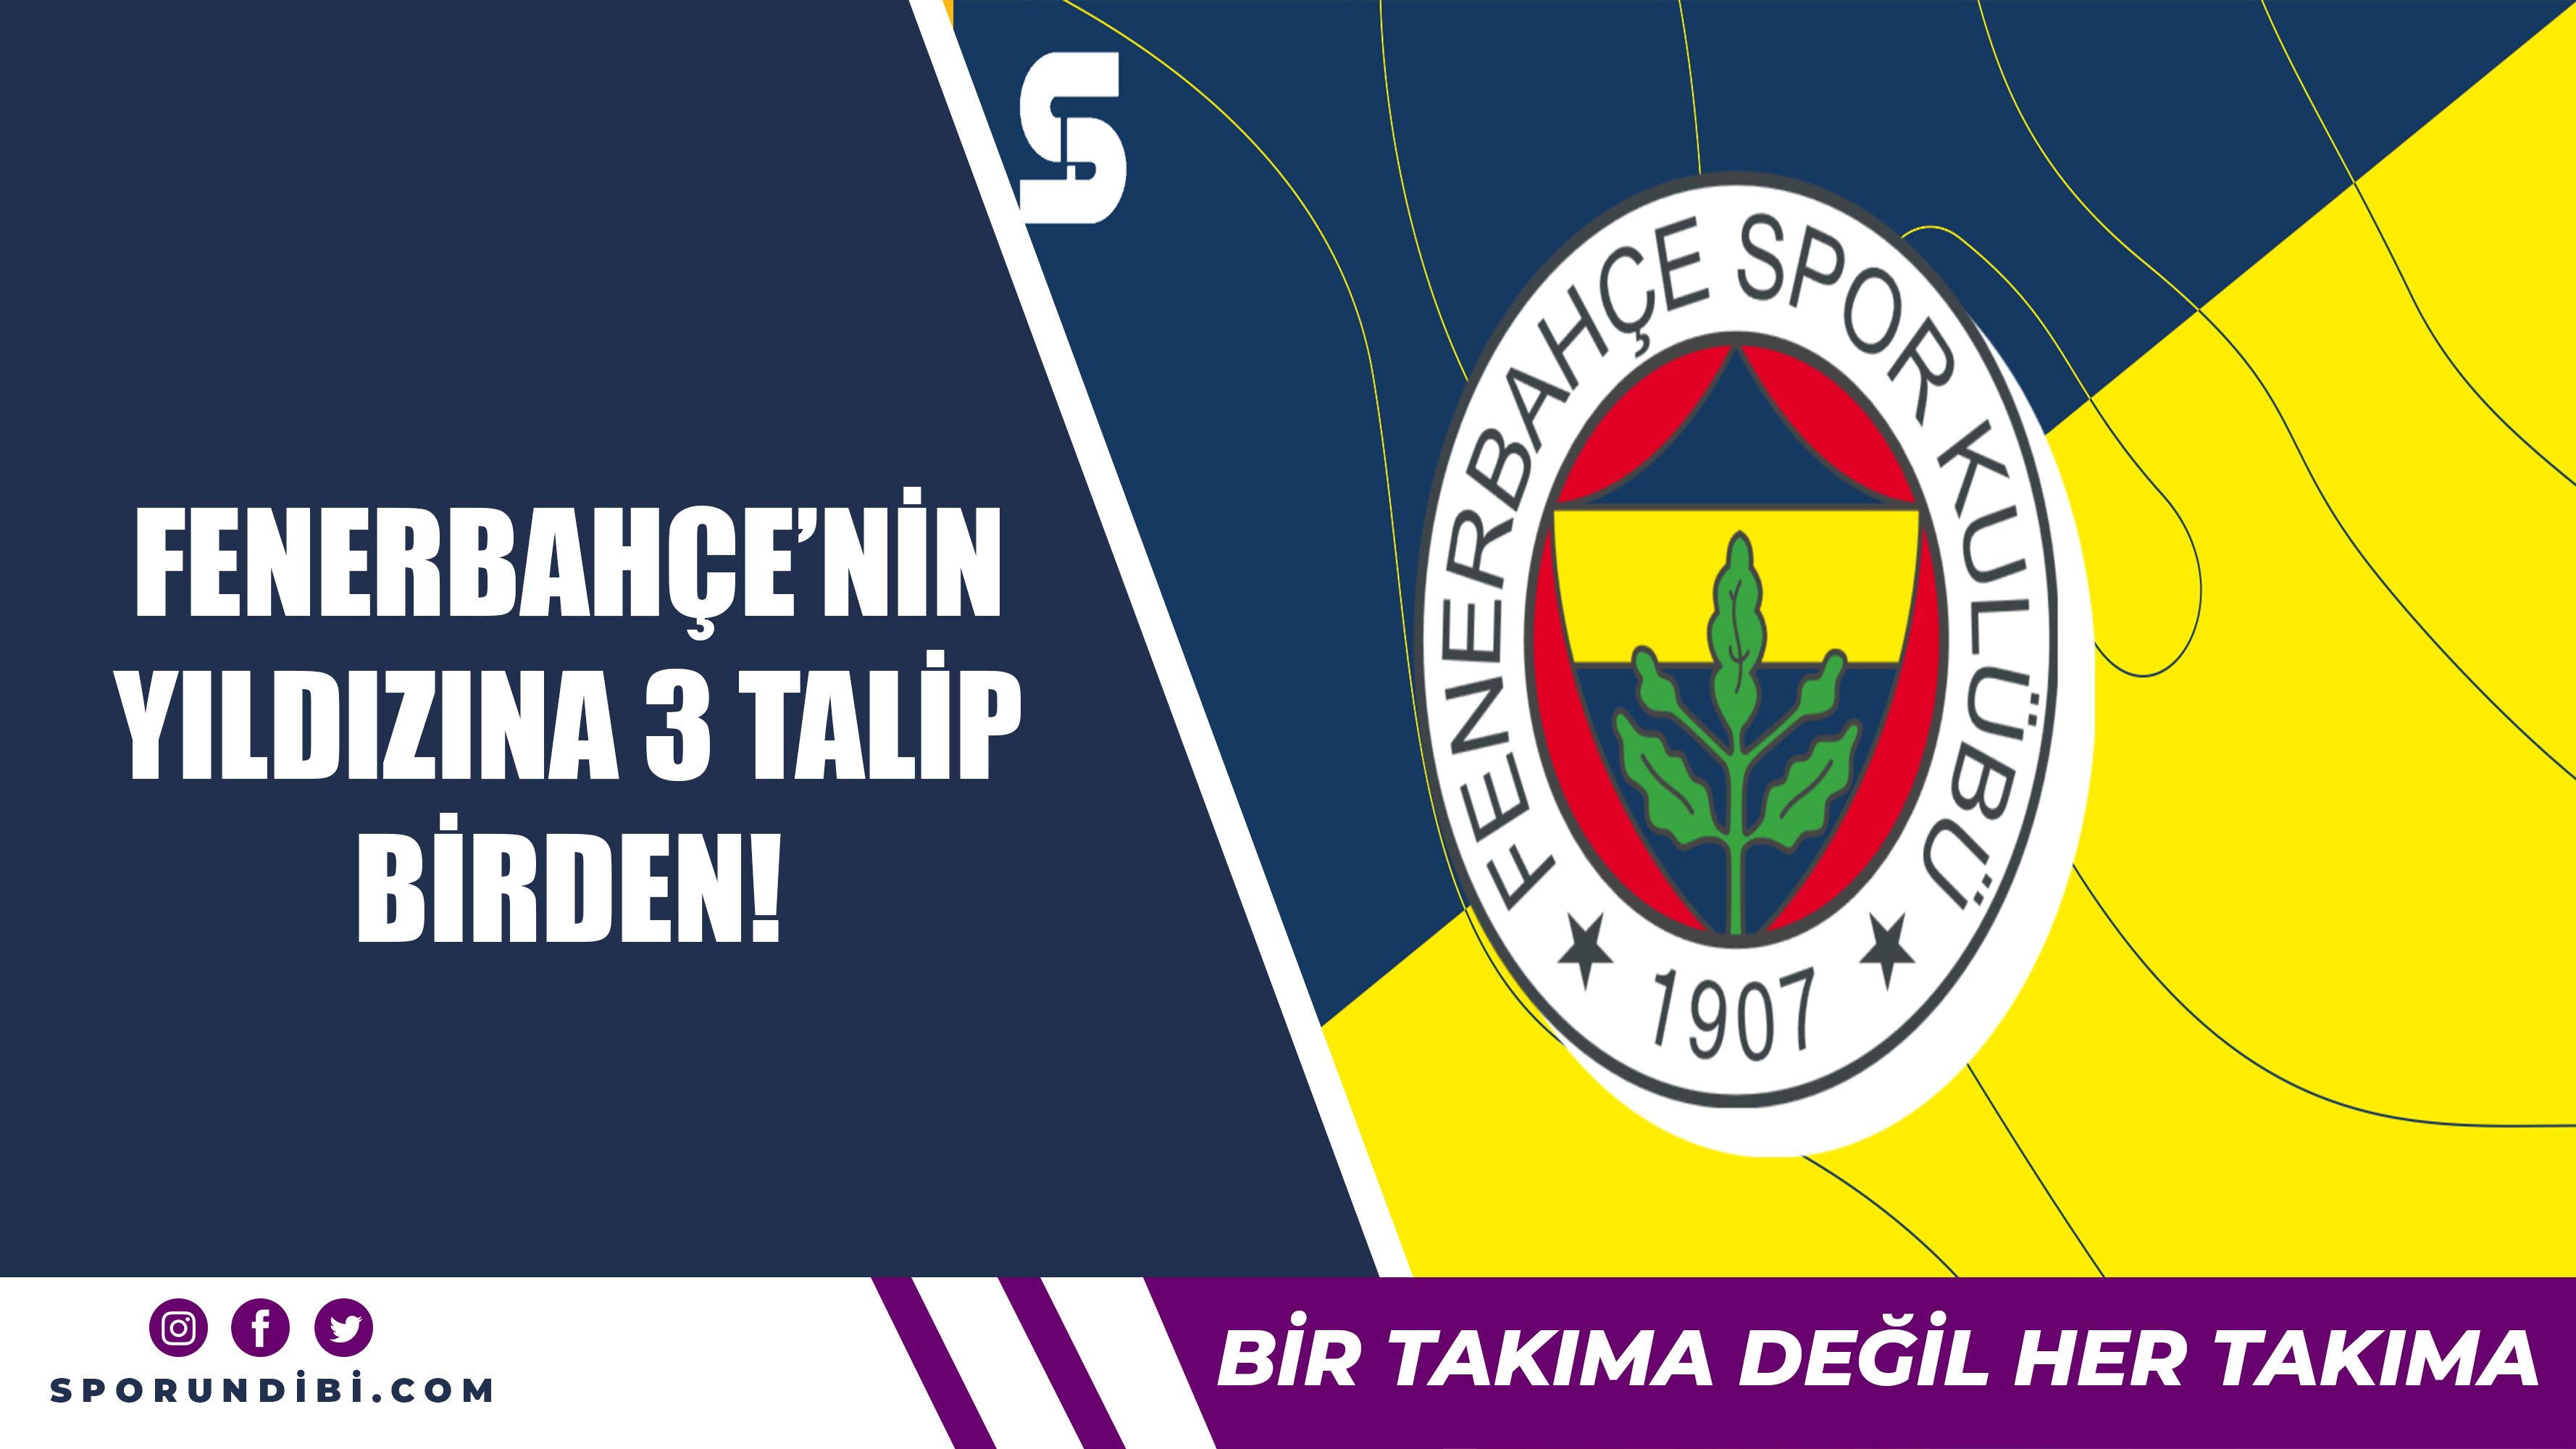 Fenerbahçe'nin yıldızına 3 talip birden!